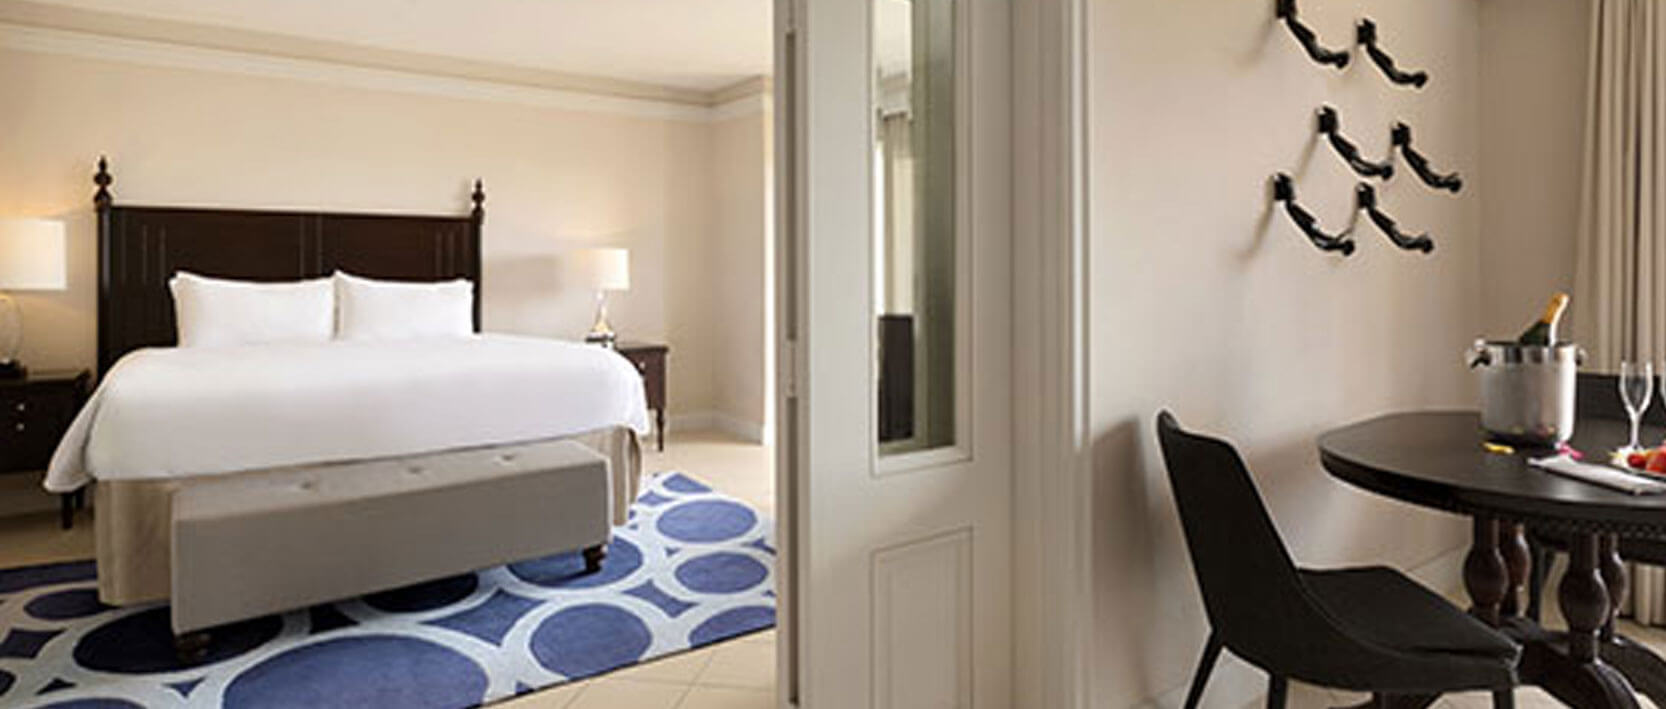 Hyatt Ziva Rose Hall Accommodations - One-Bedroom Ocean View Butler Suite